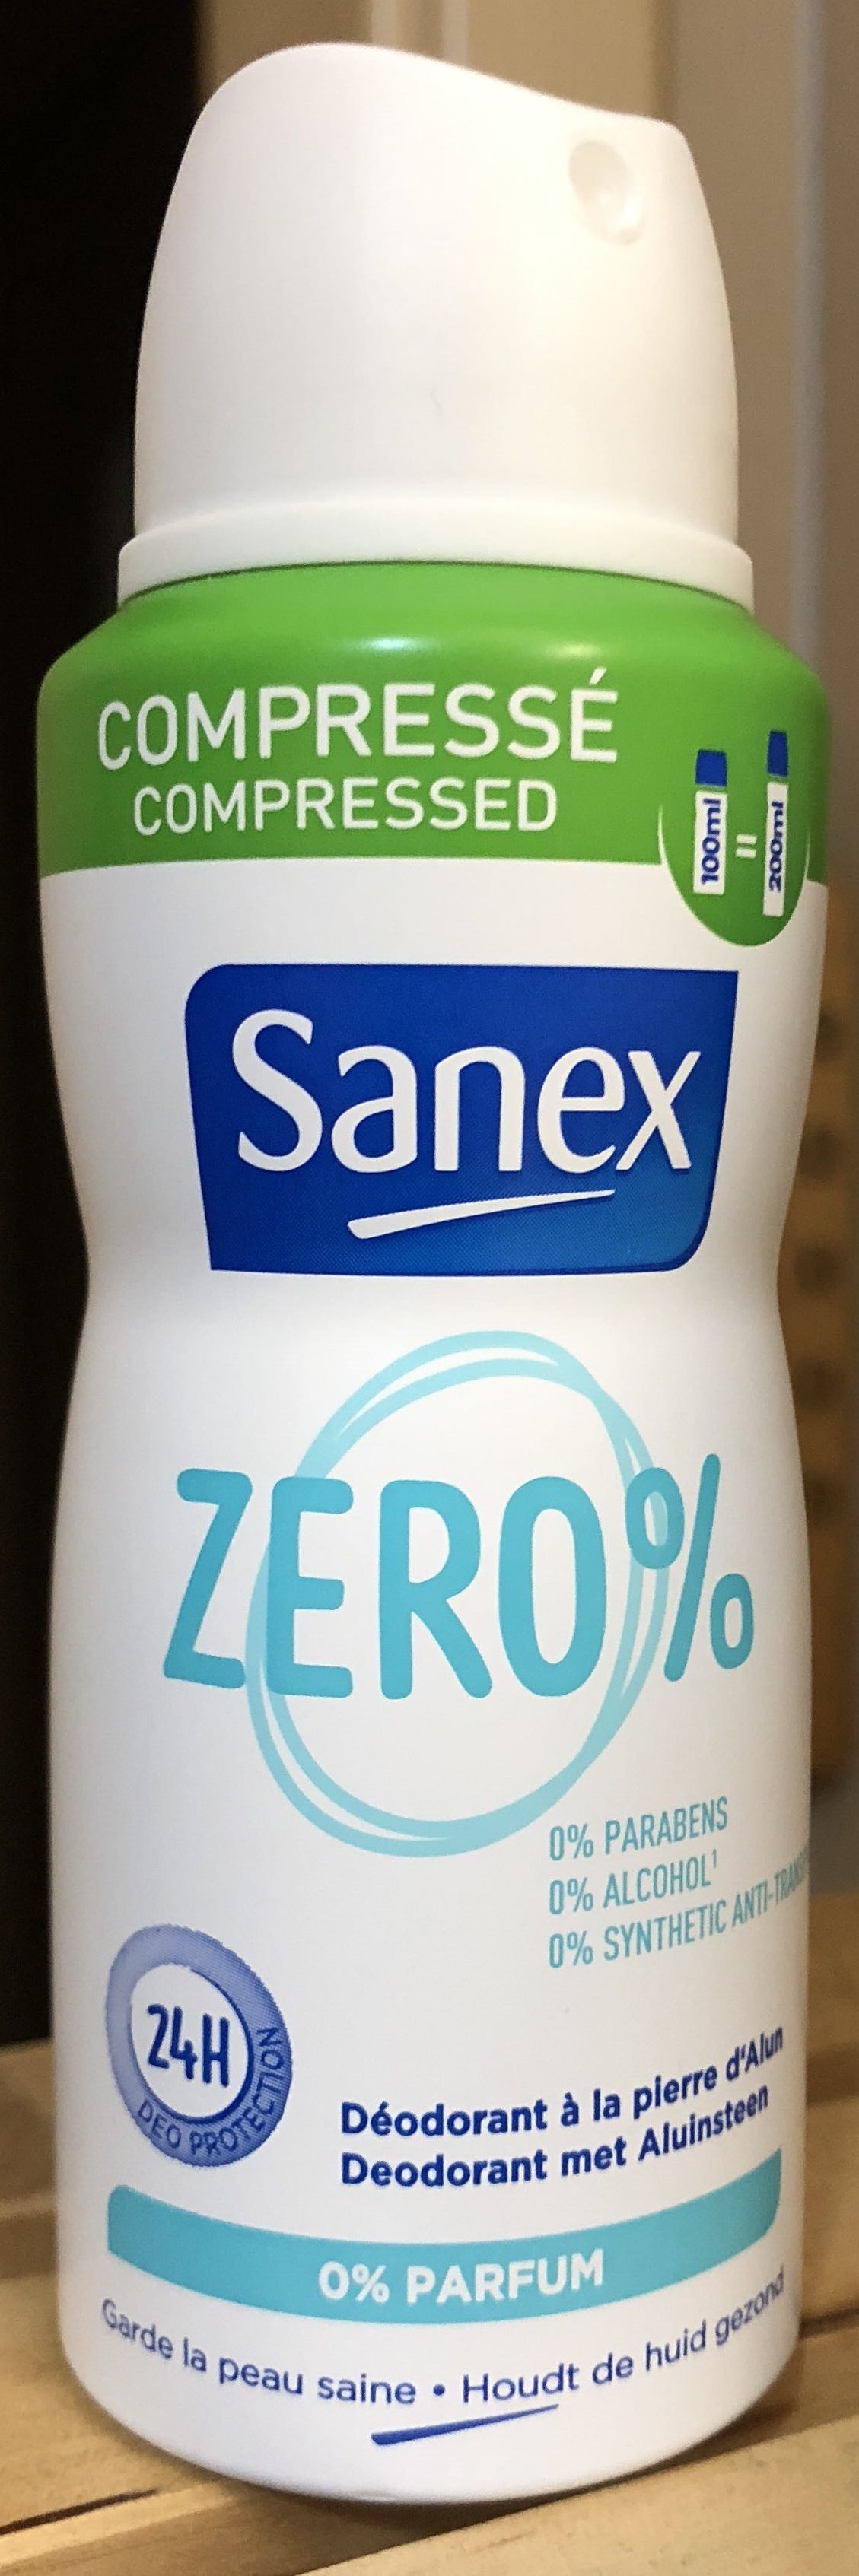 Sanex zero% - Tuote - fr